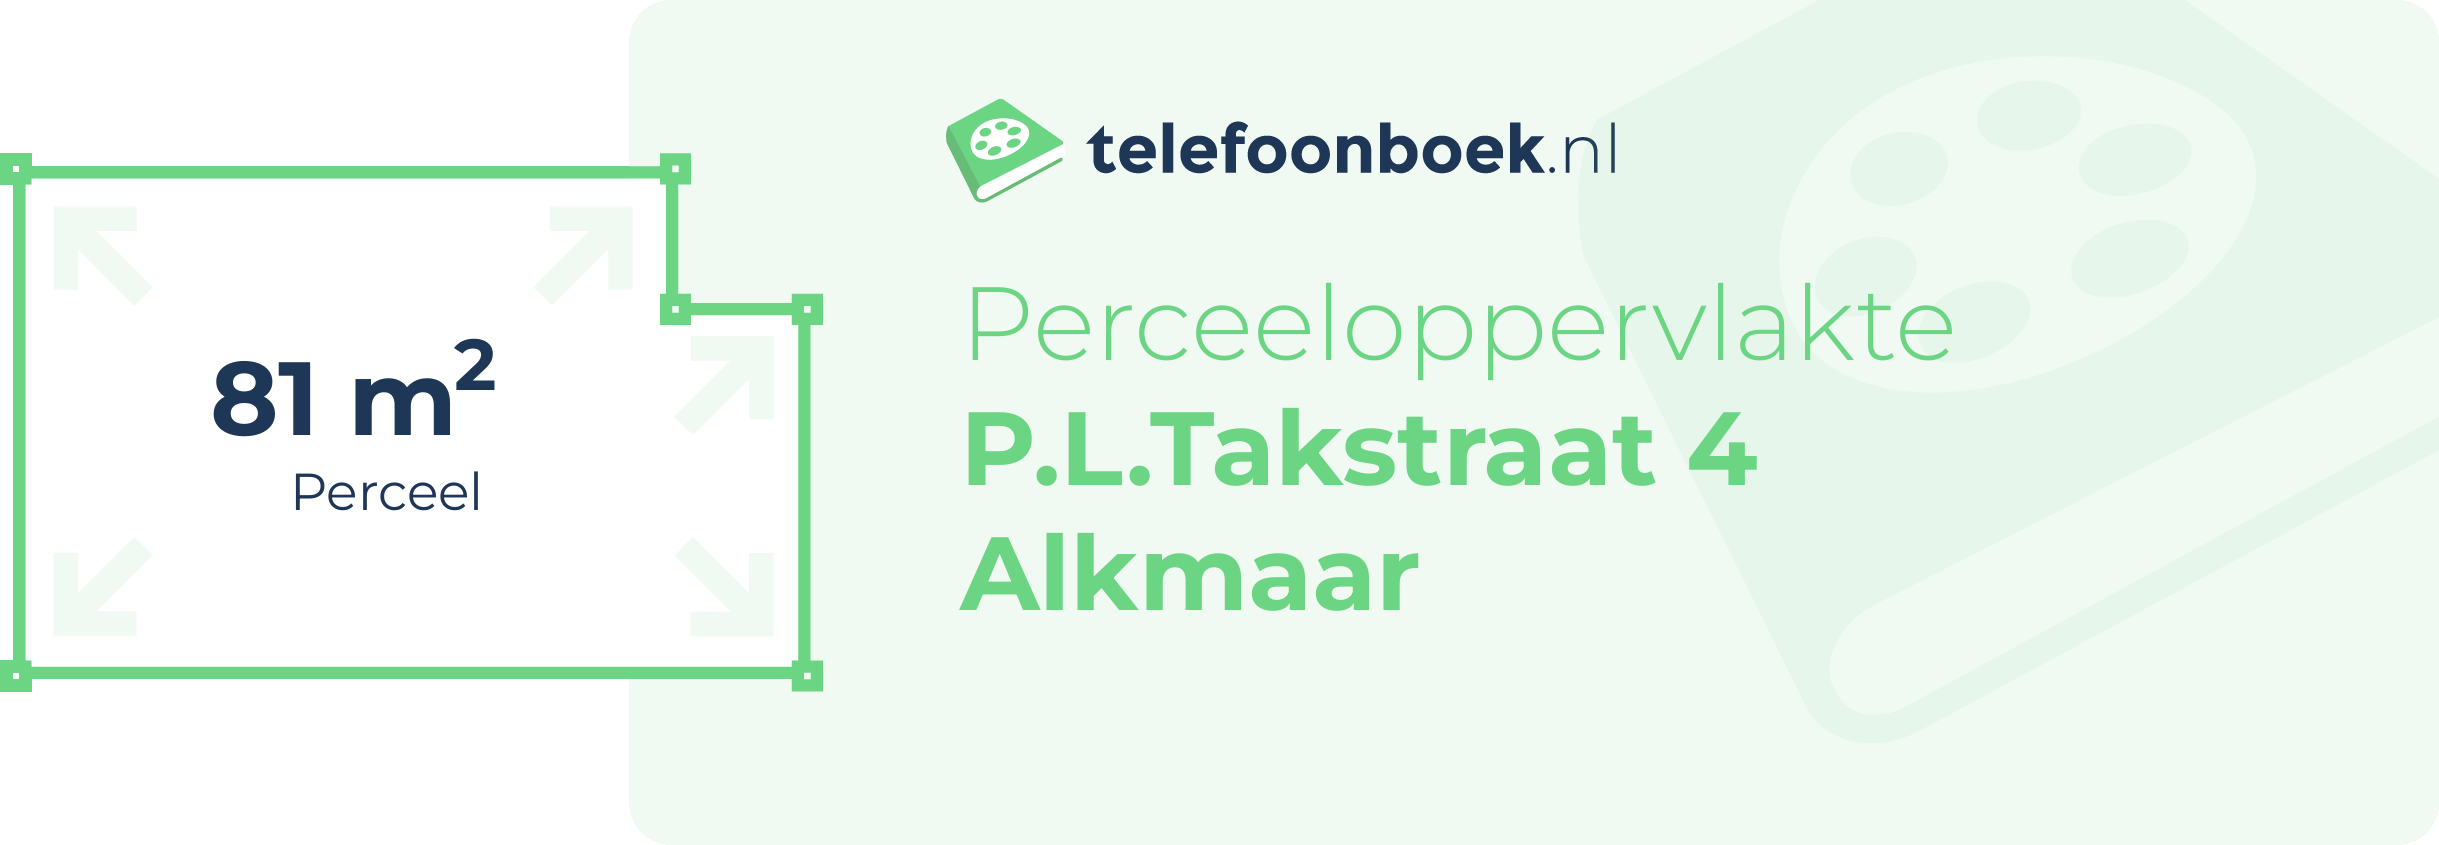 Perceeloppervlakte P.L.Takstraat 4 Alkmaar